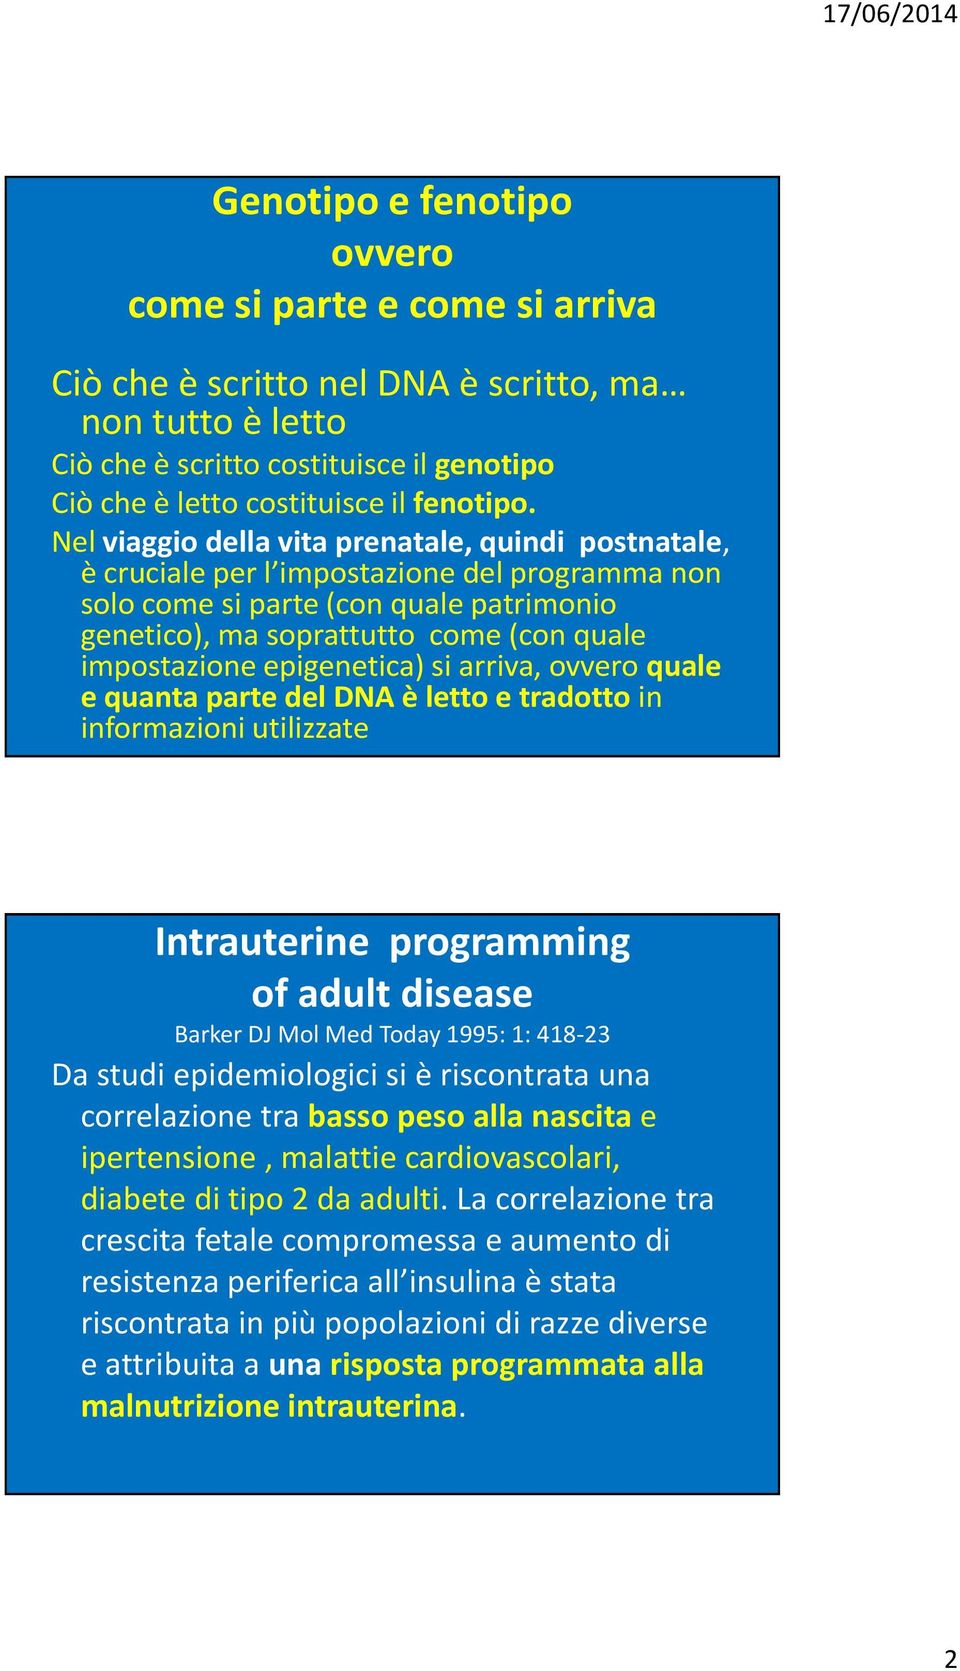 epigenetica) si arriva, ovvero quale e quanta parte del DNA è letto e tradotto in informazioni utilizzate Intrauterine programming of adult disease Barker DJ Mol Med Today 1995: 1: 418-23 Da studi